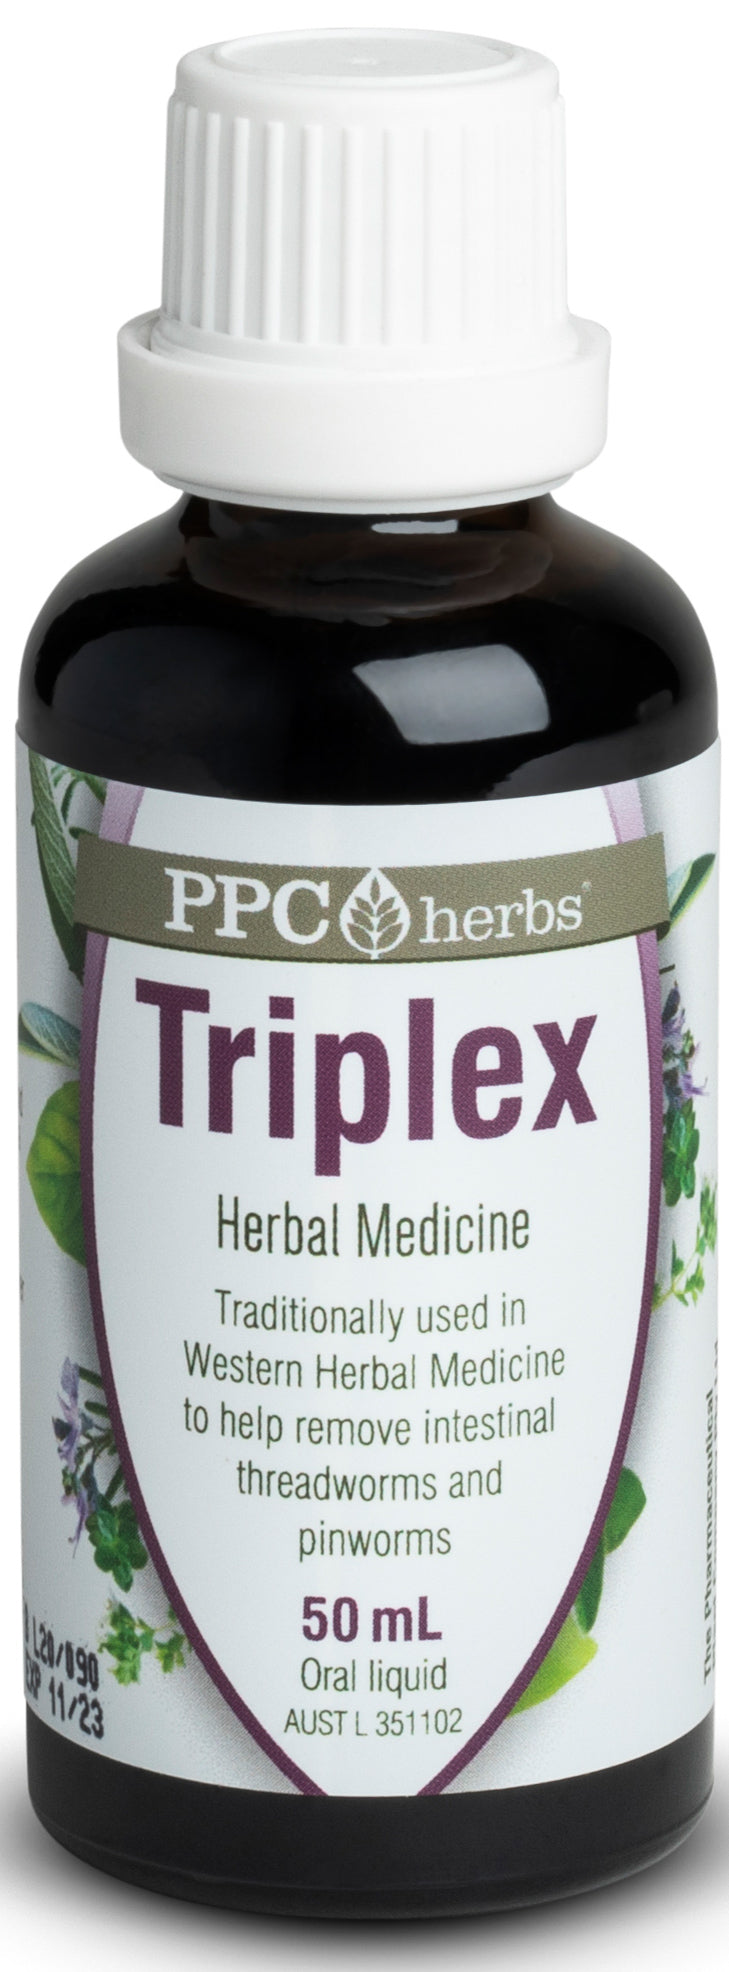 PPC Herbs Tri Plex 50ml